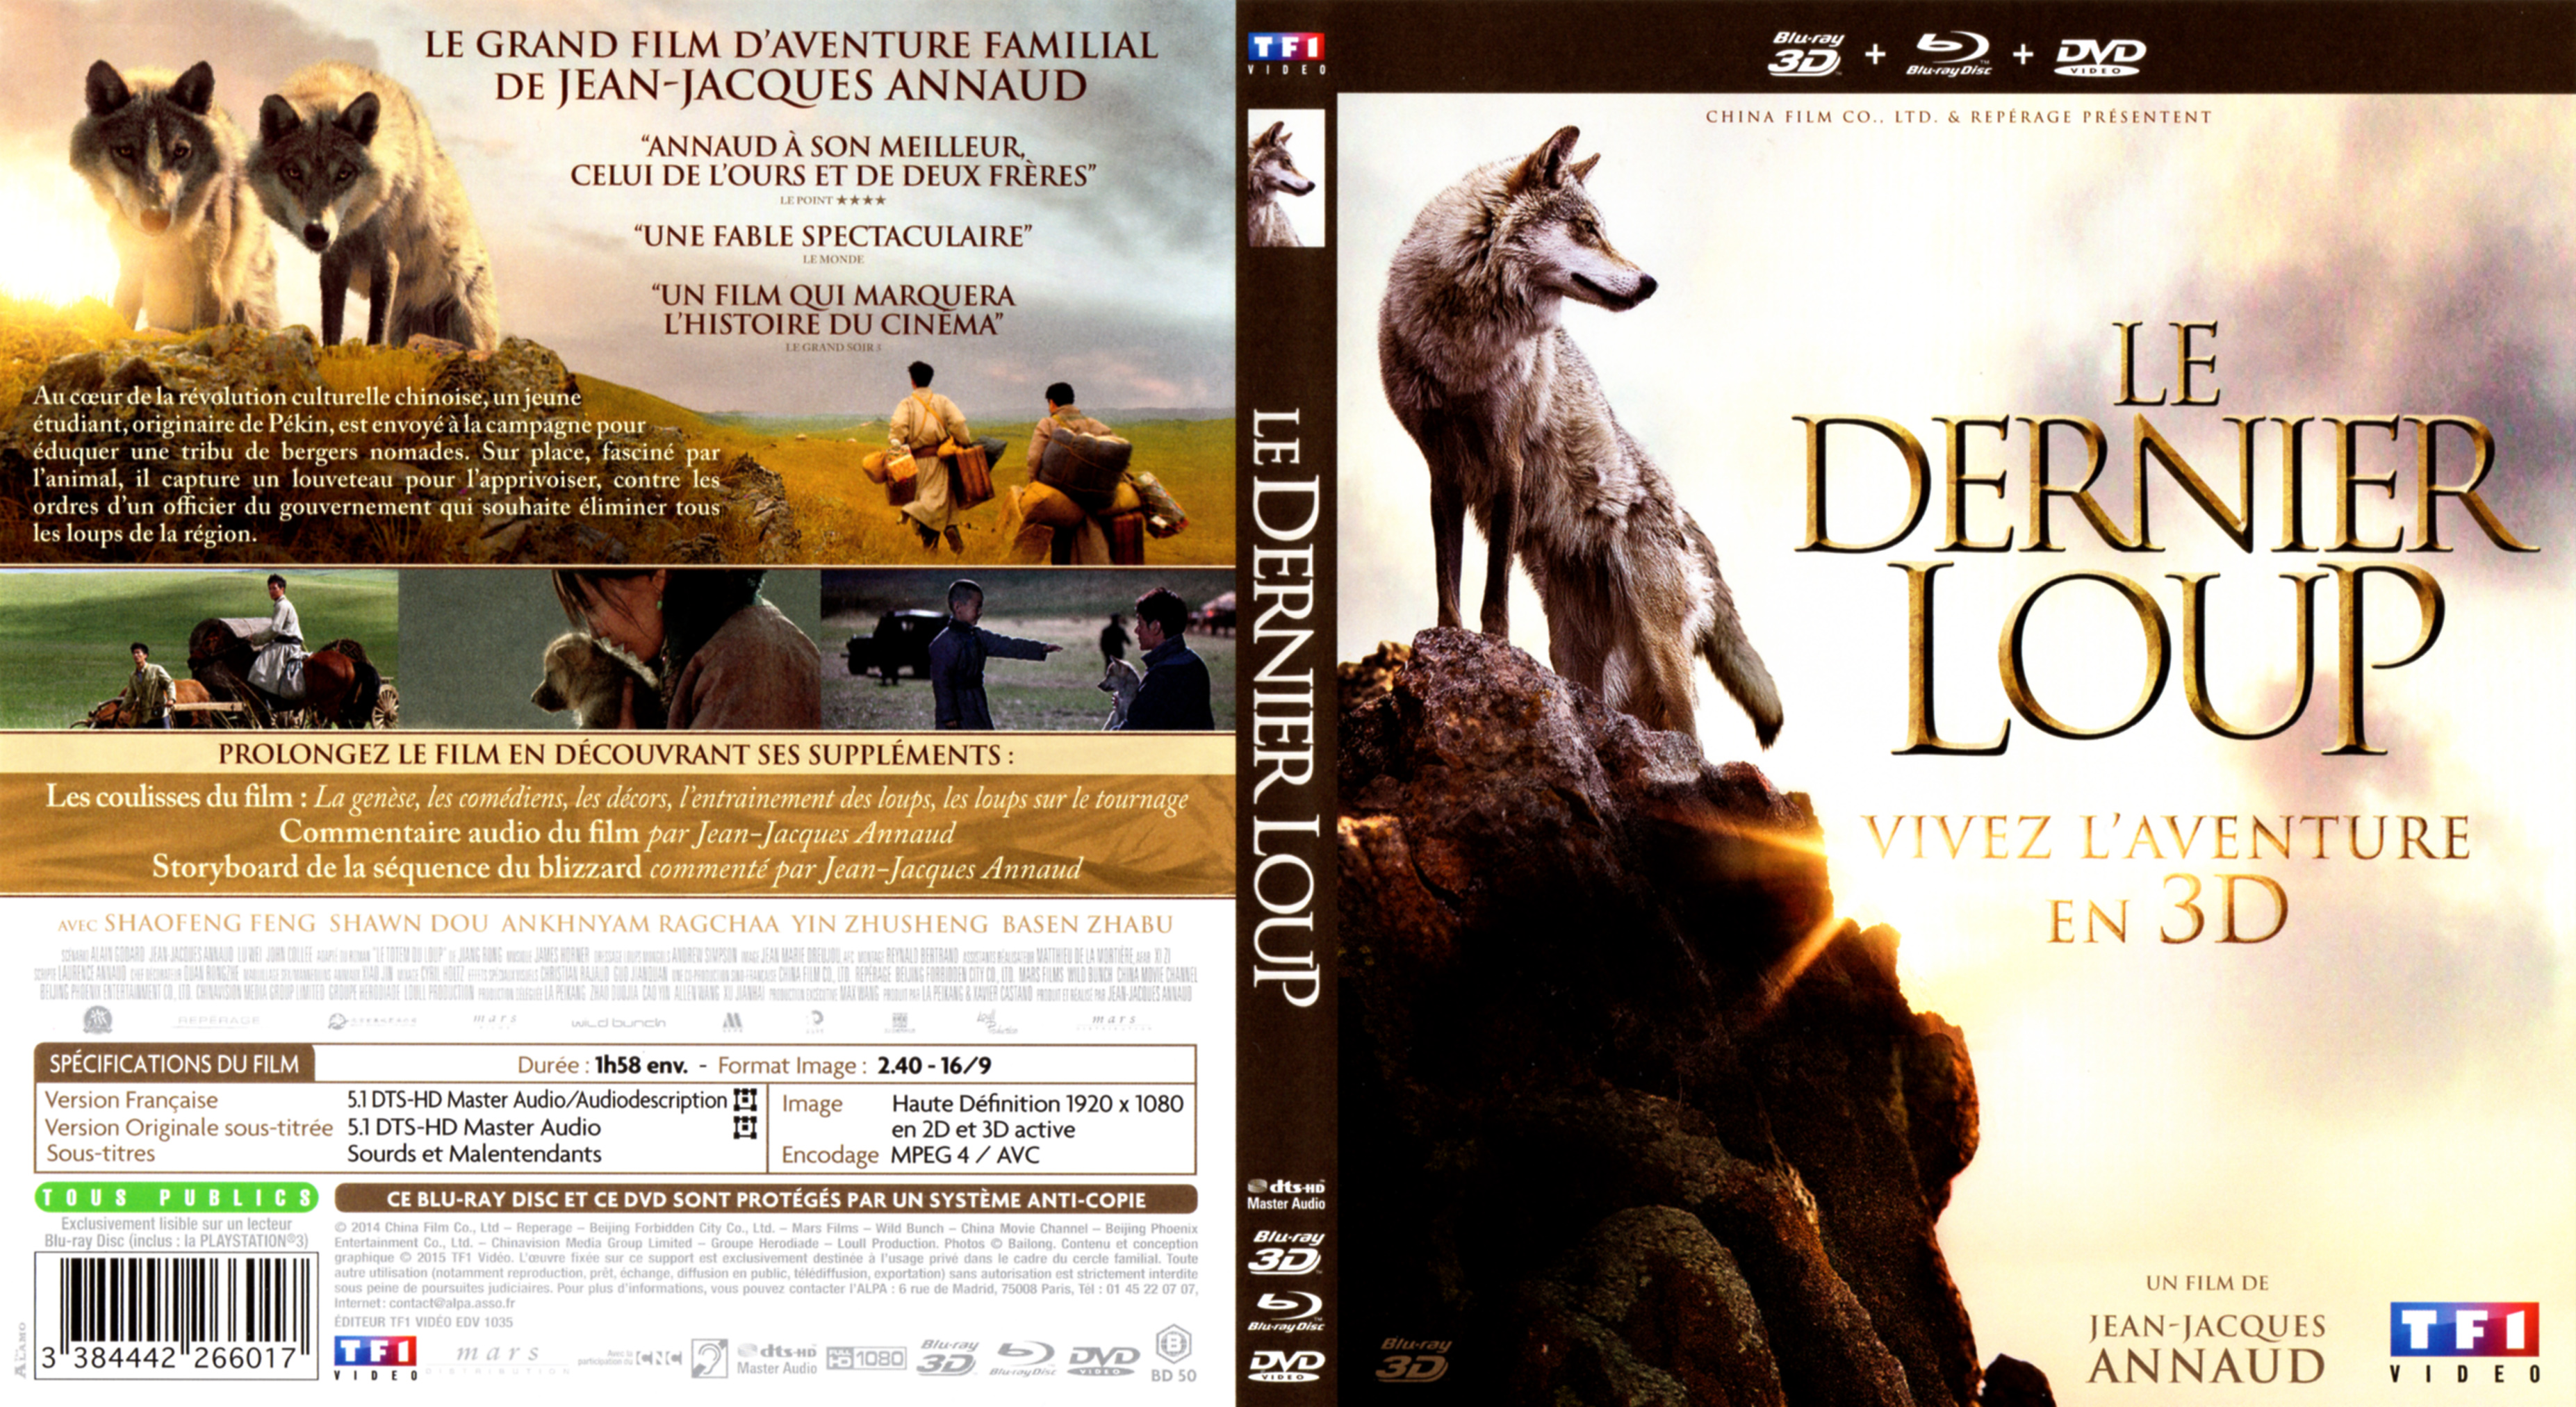 Jaquette DVD Le dernier loup (BLU-RAY)